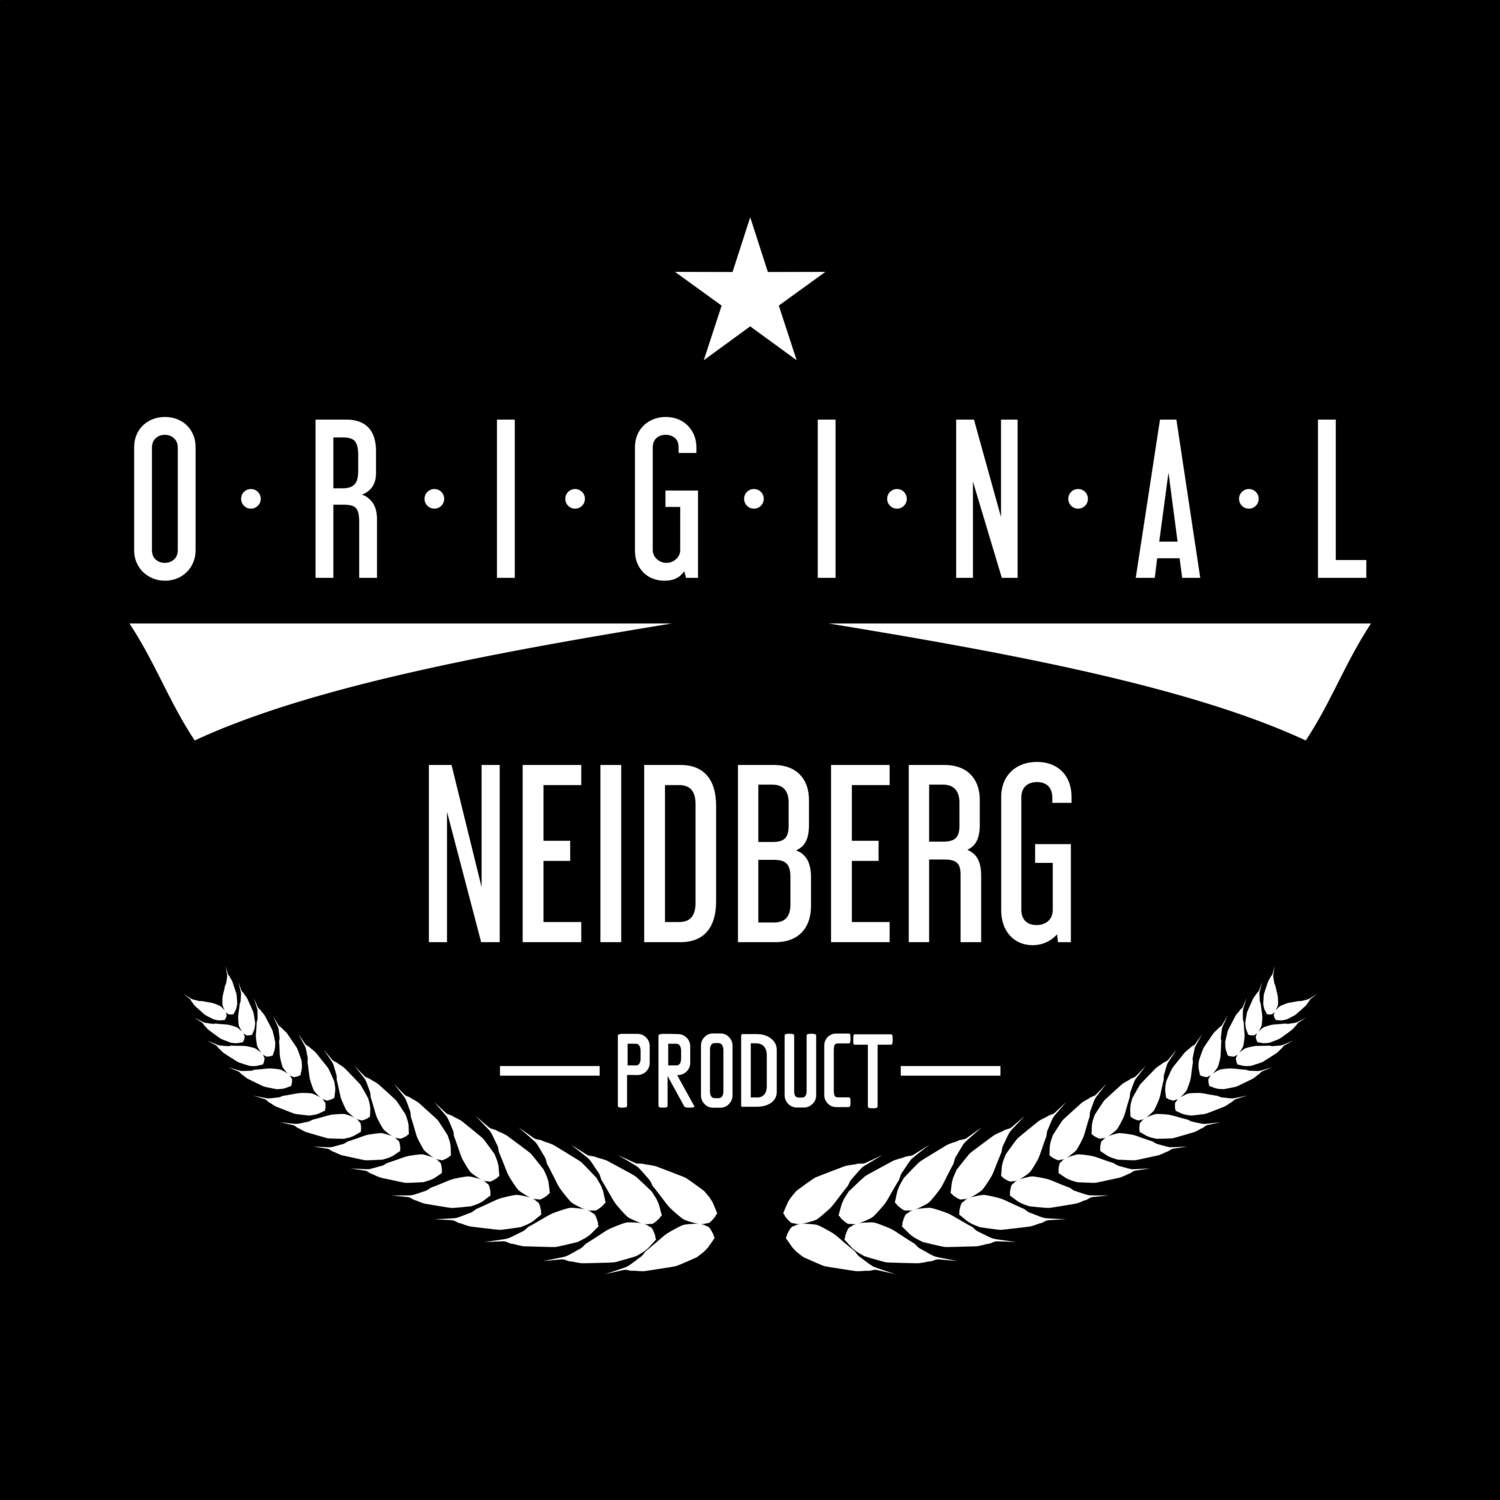 Neidberg T-Shirt »Original Product«